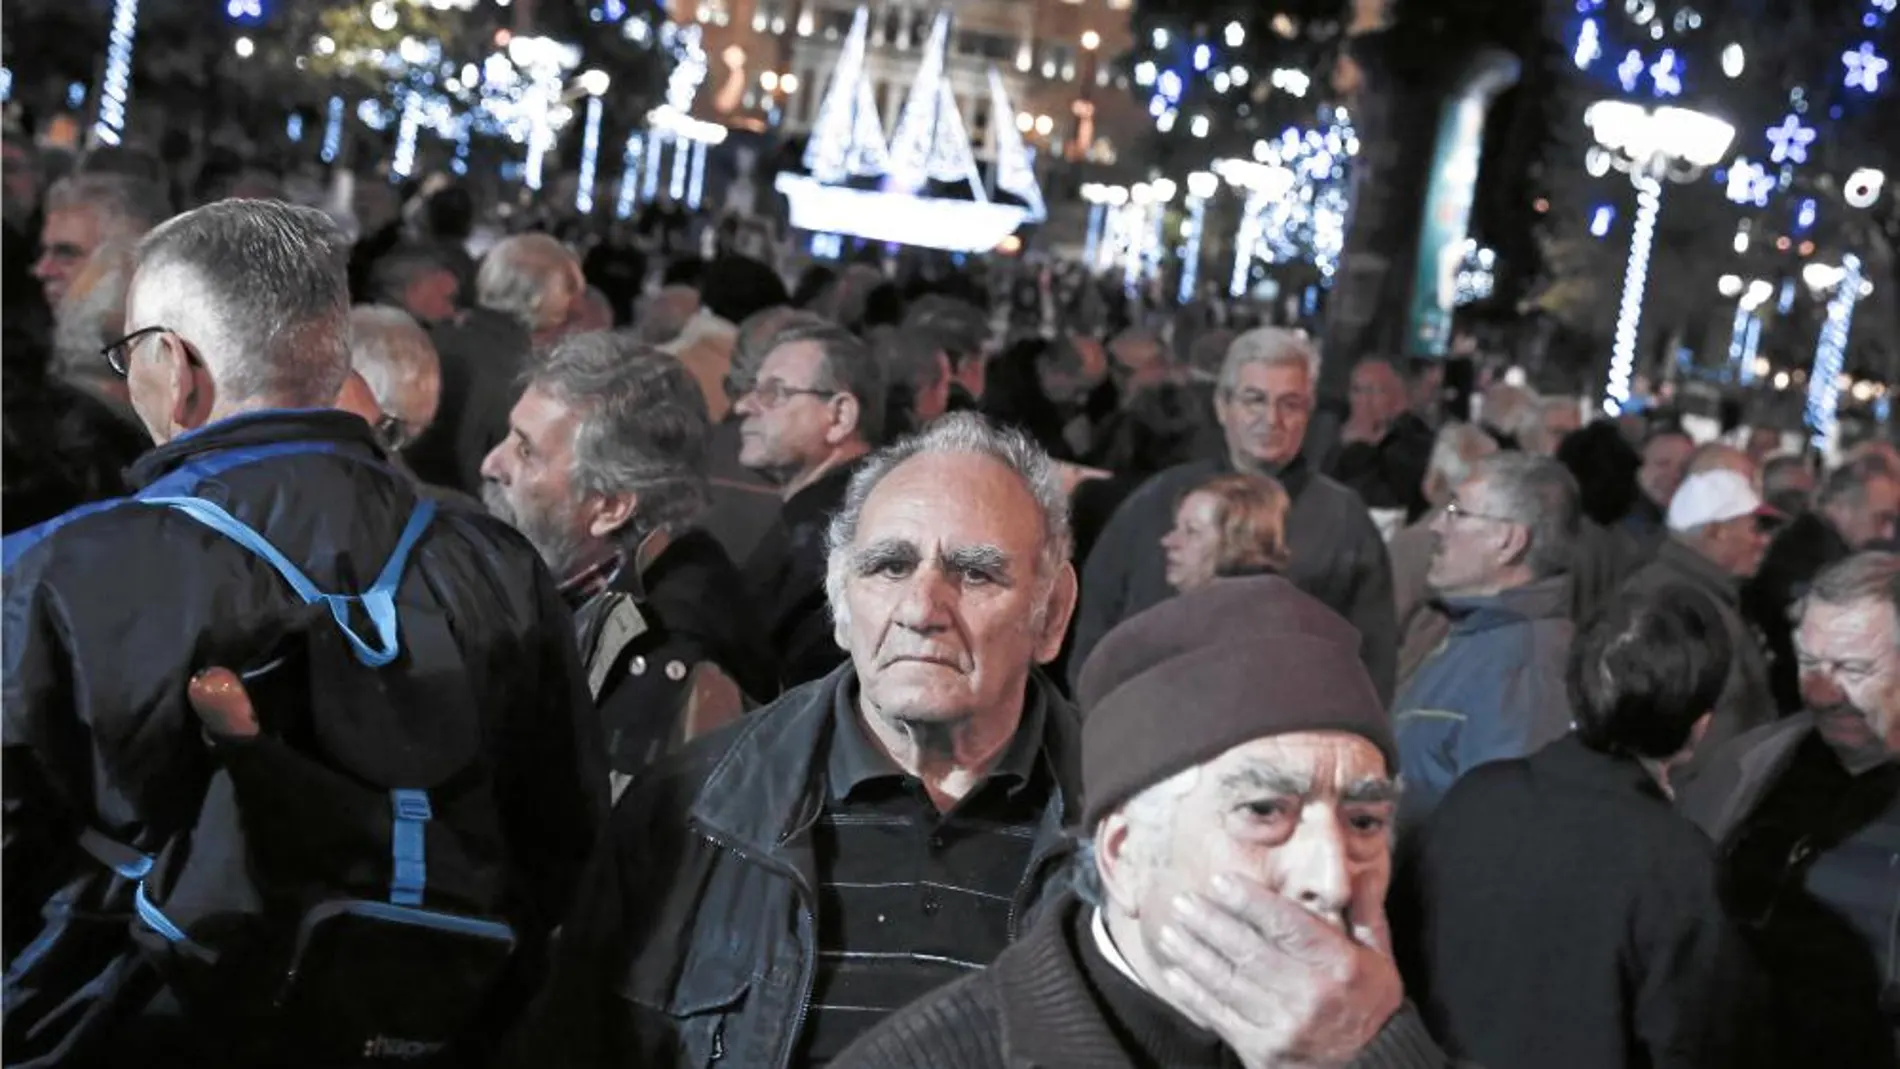 Las protestas se han concentrado fuera del ministerio de finanzas y del Parlamento griego, en el centro de Atenas